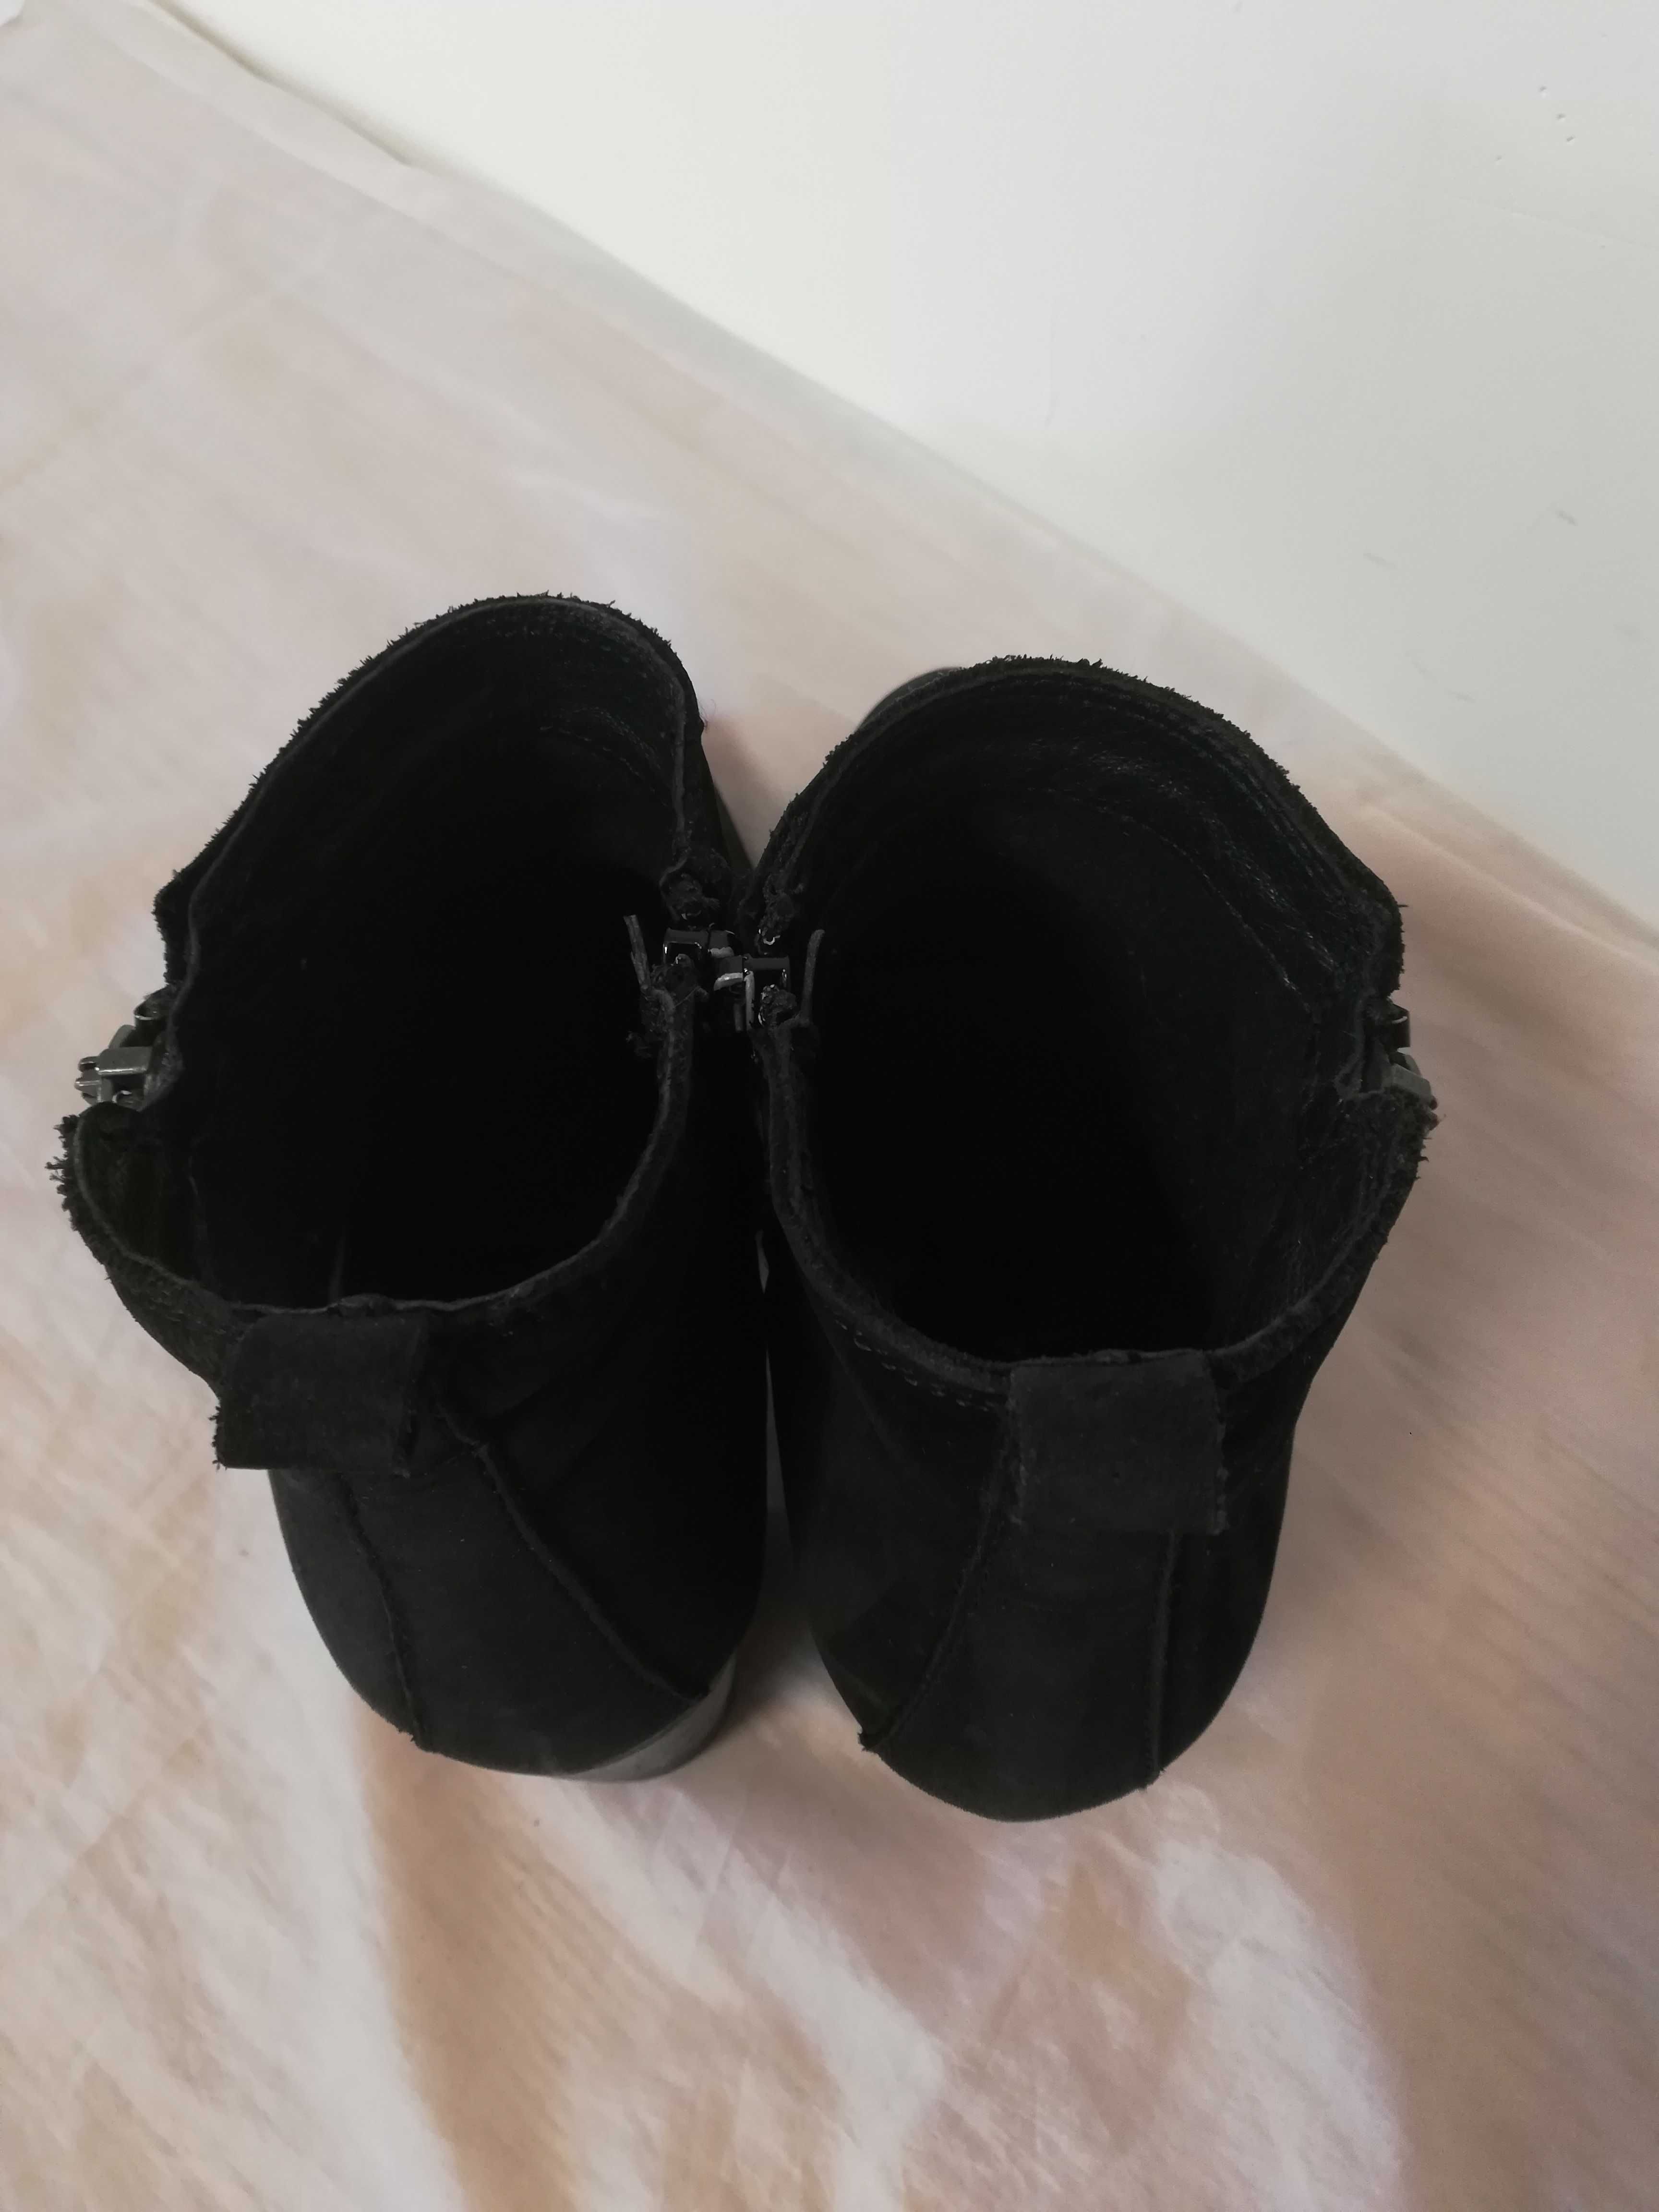 Buty botki skórzane Venezia r. 38 , wkł 25 cm